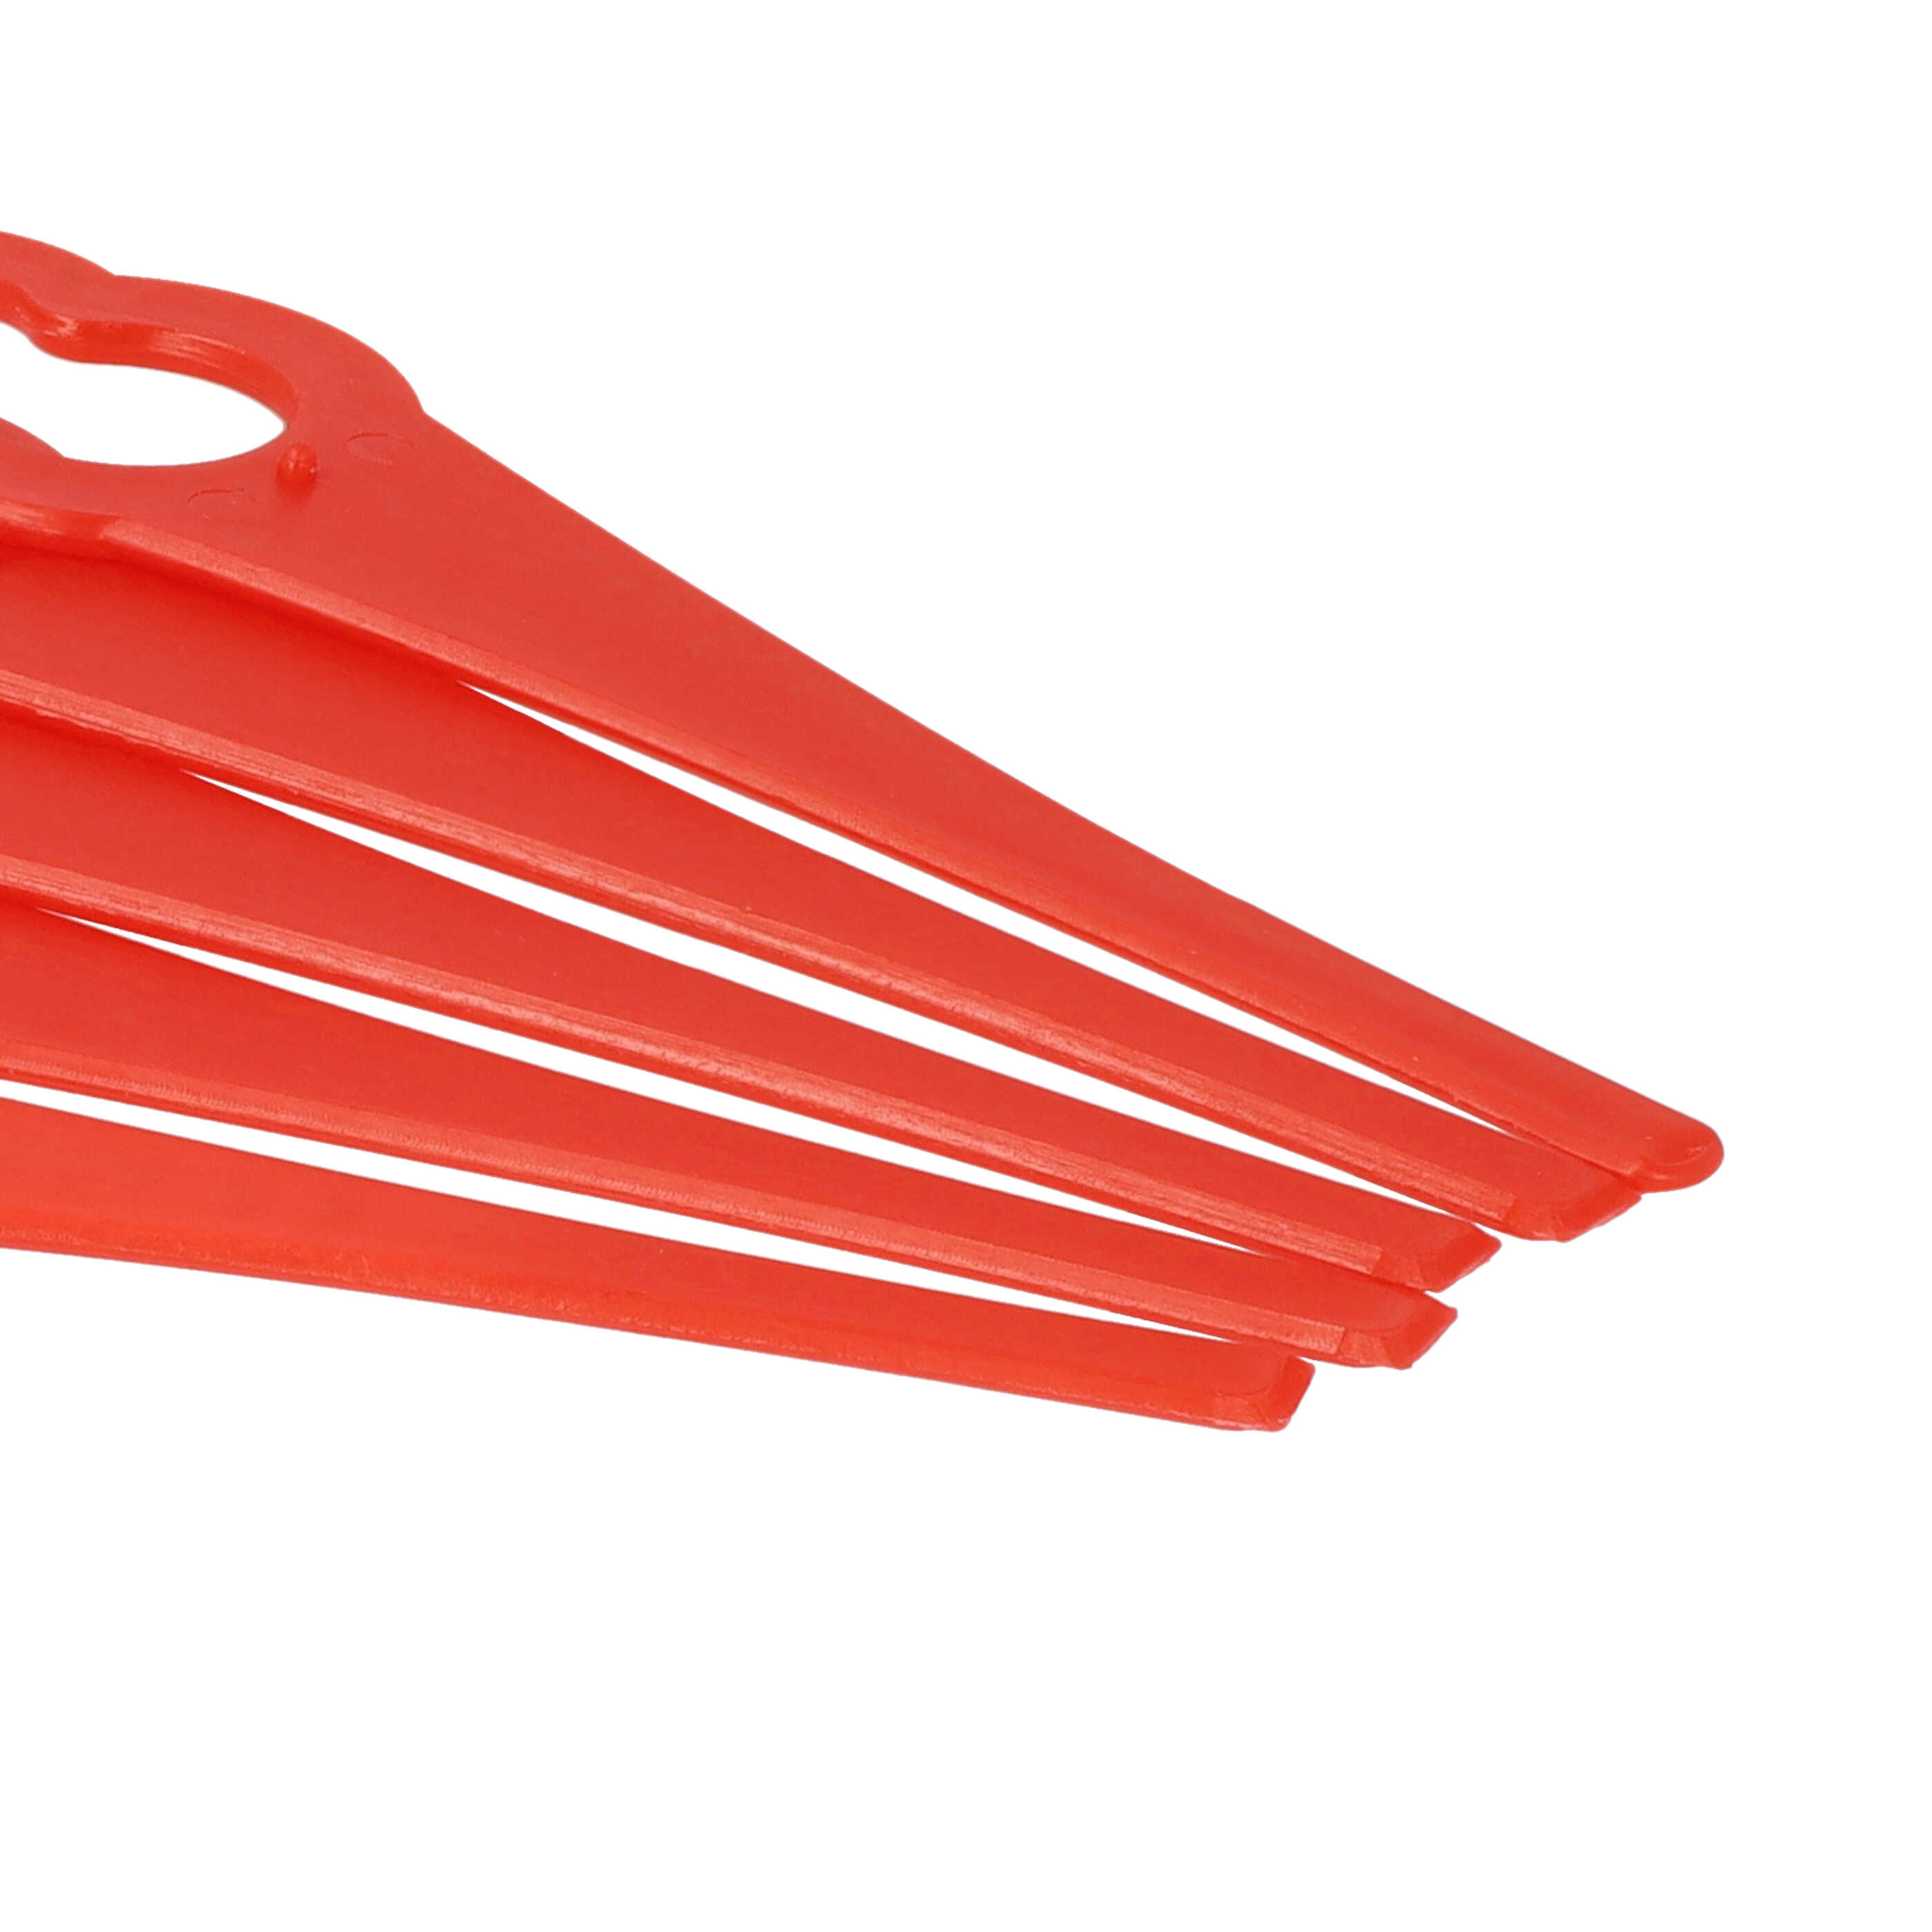 5x Nożyki do podkaszarki Bosch zam. ALM BQ026 - nylon / plastik, czerwony